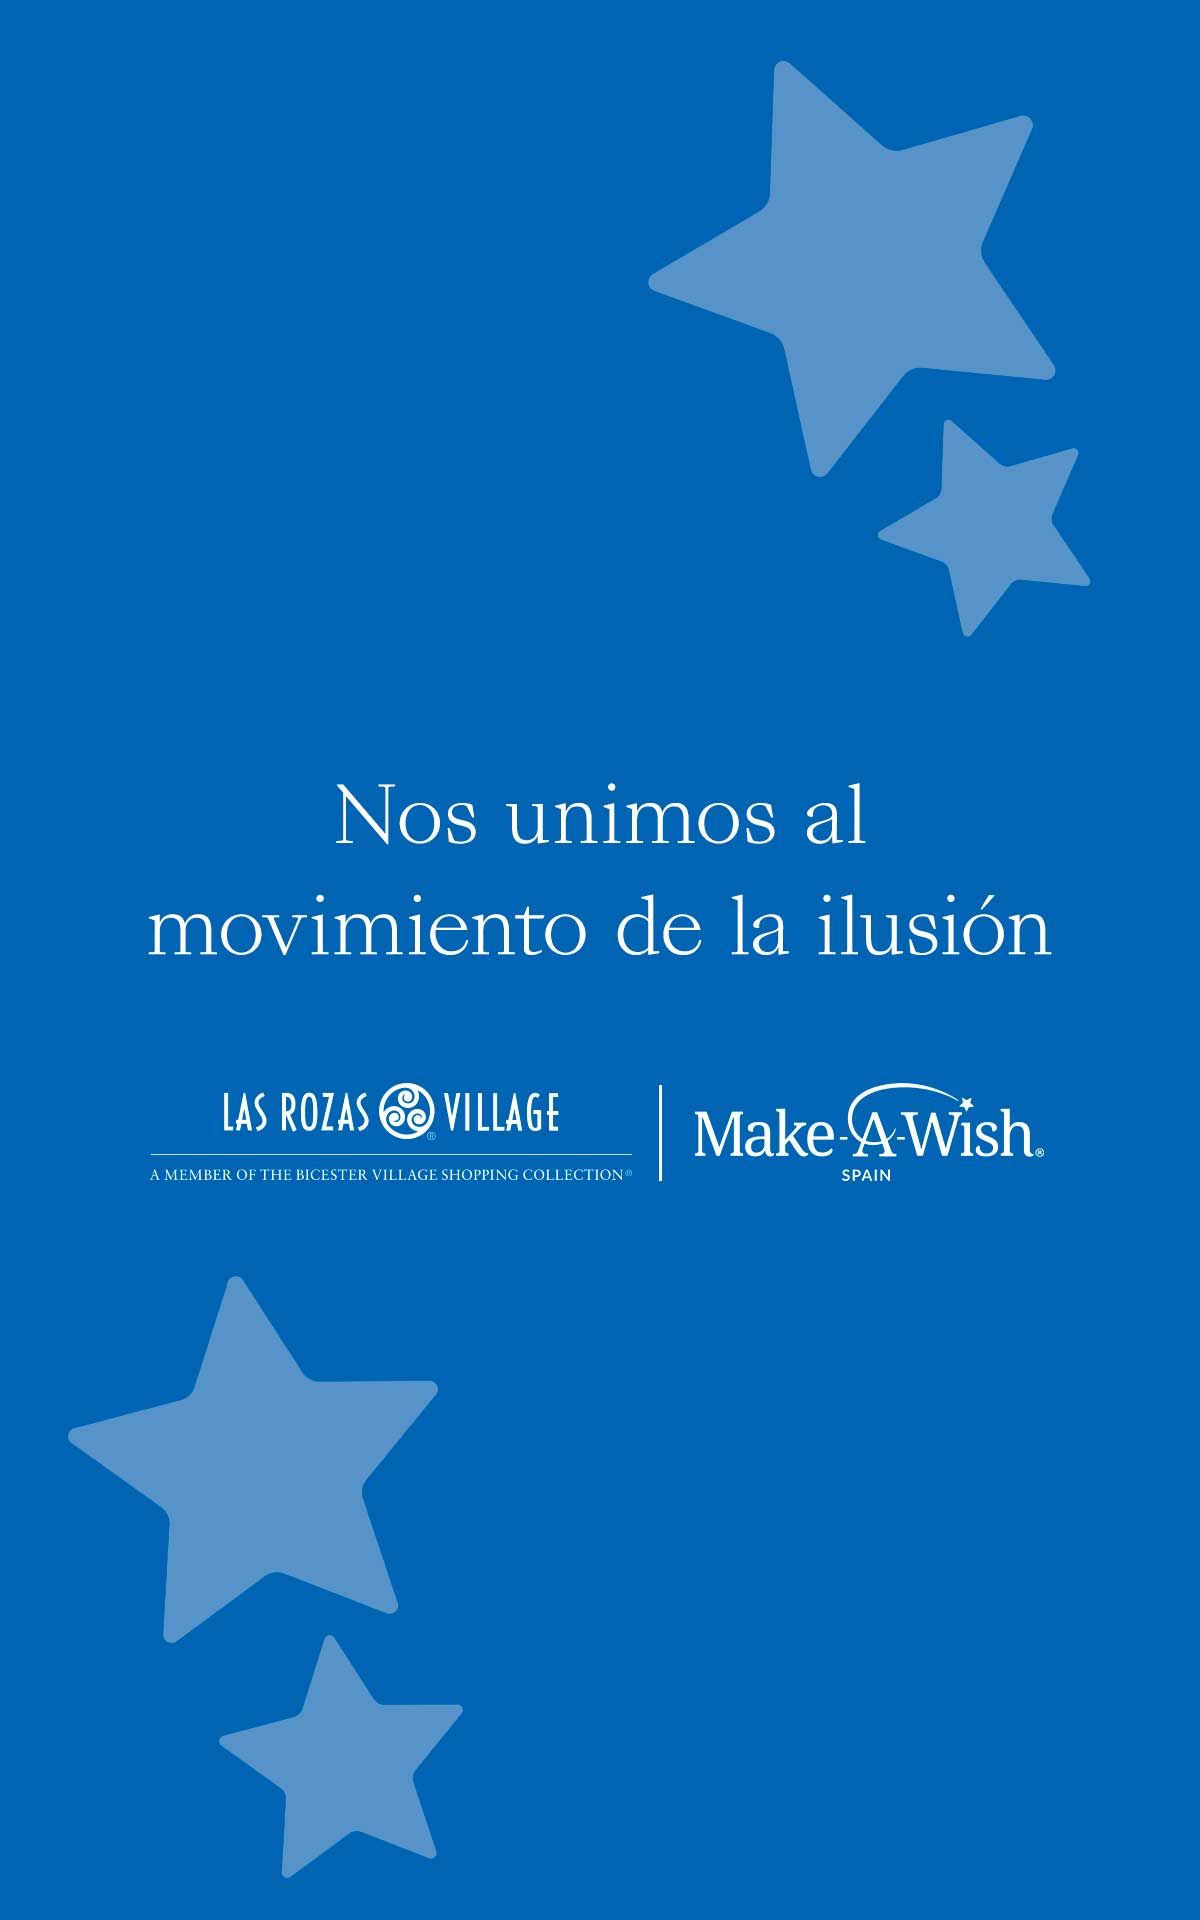 Nos unimos al movimiento de la ilusión con Make A Wish